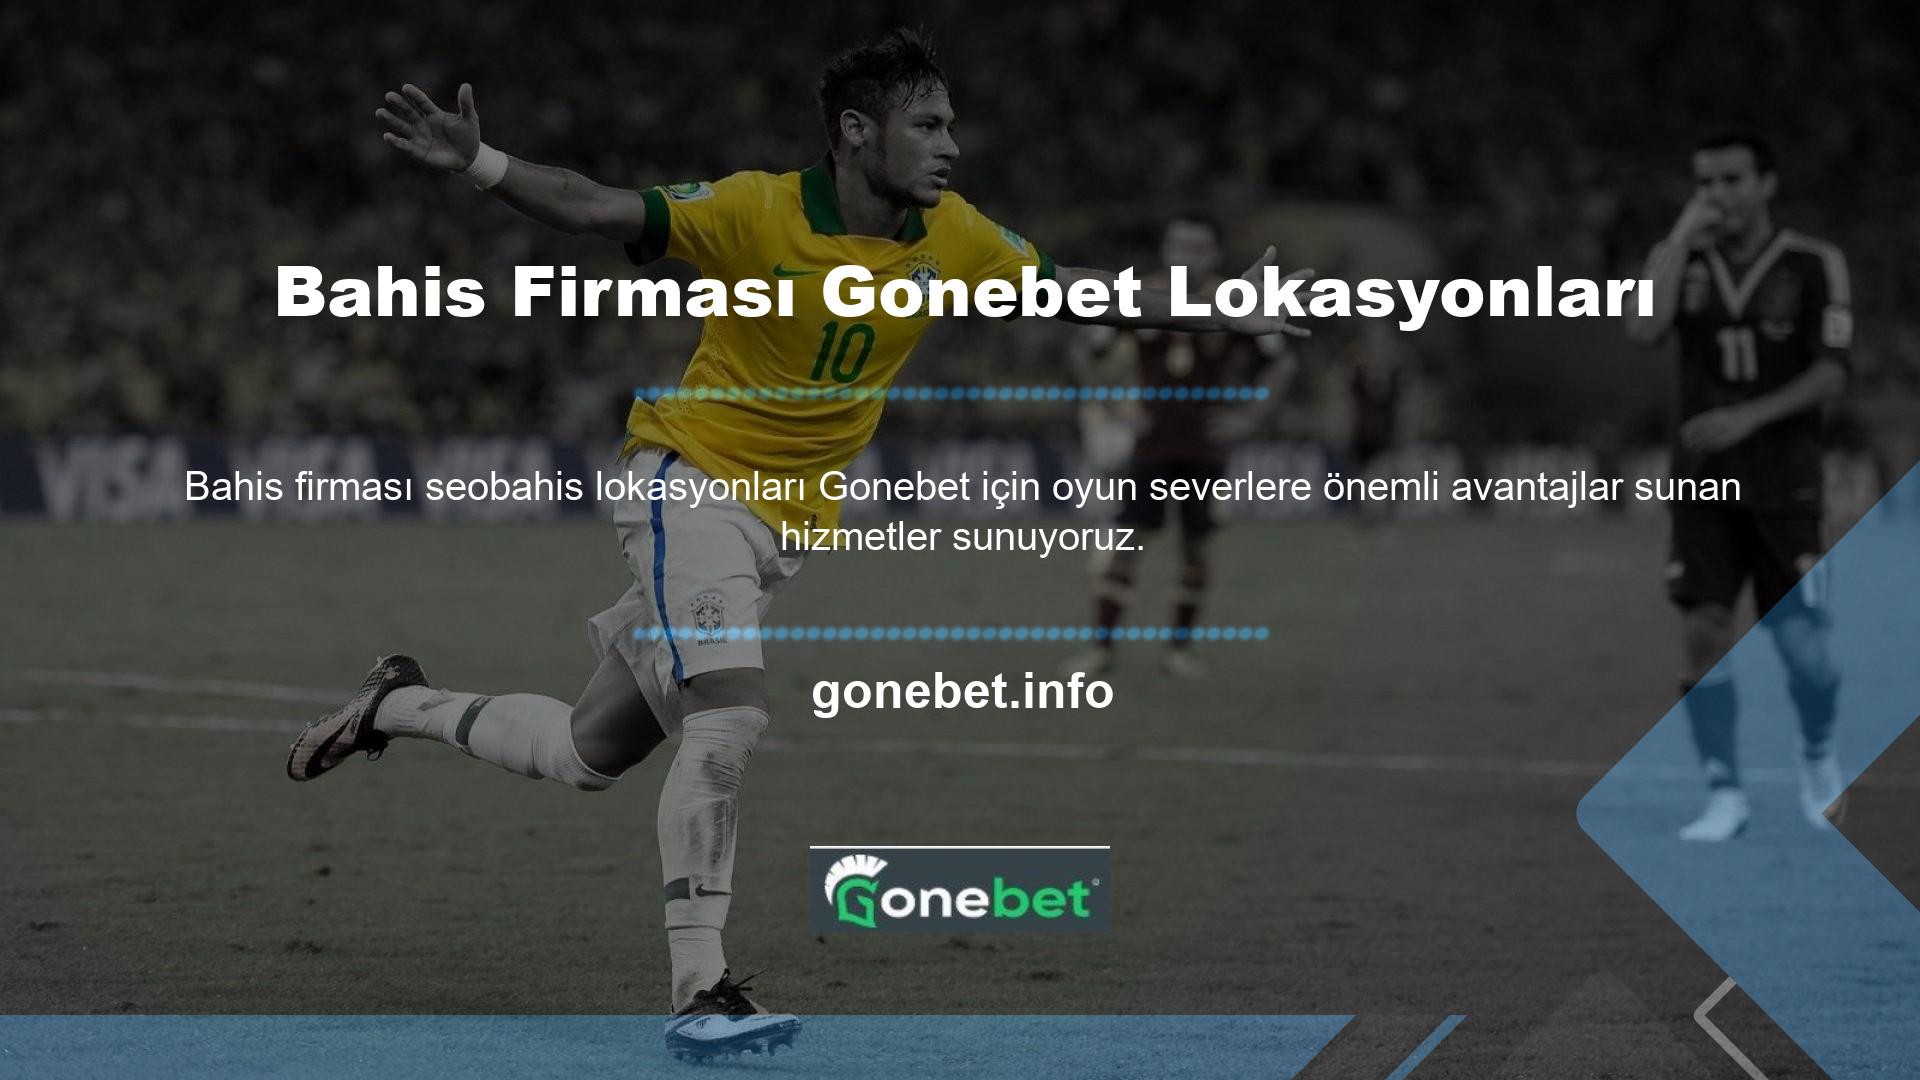 Bahis firması Gonebet lokasyonları bahis sitesi, site oyuncularına çeşitli bonus seçenekleri sunmaktadır